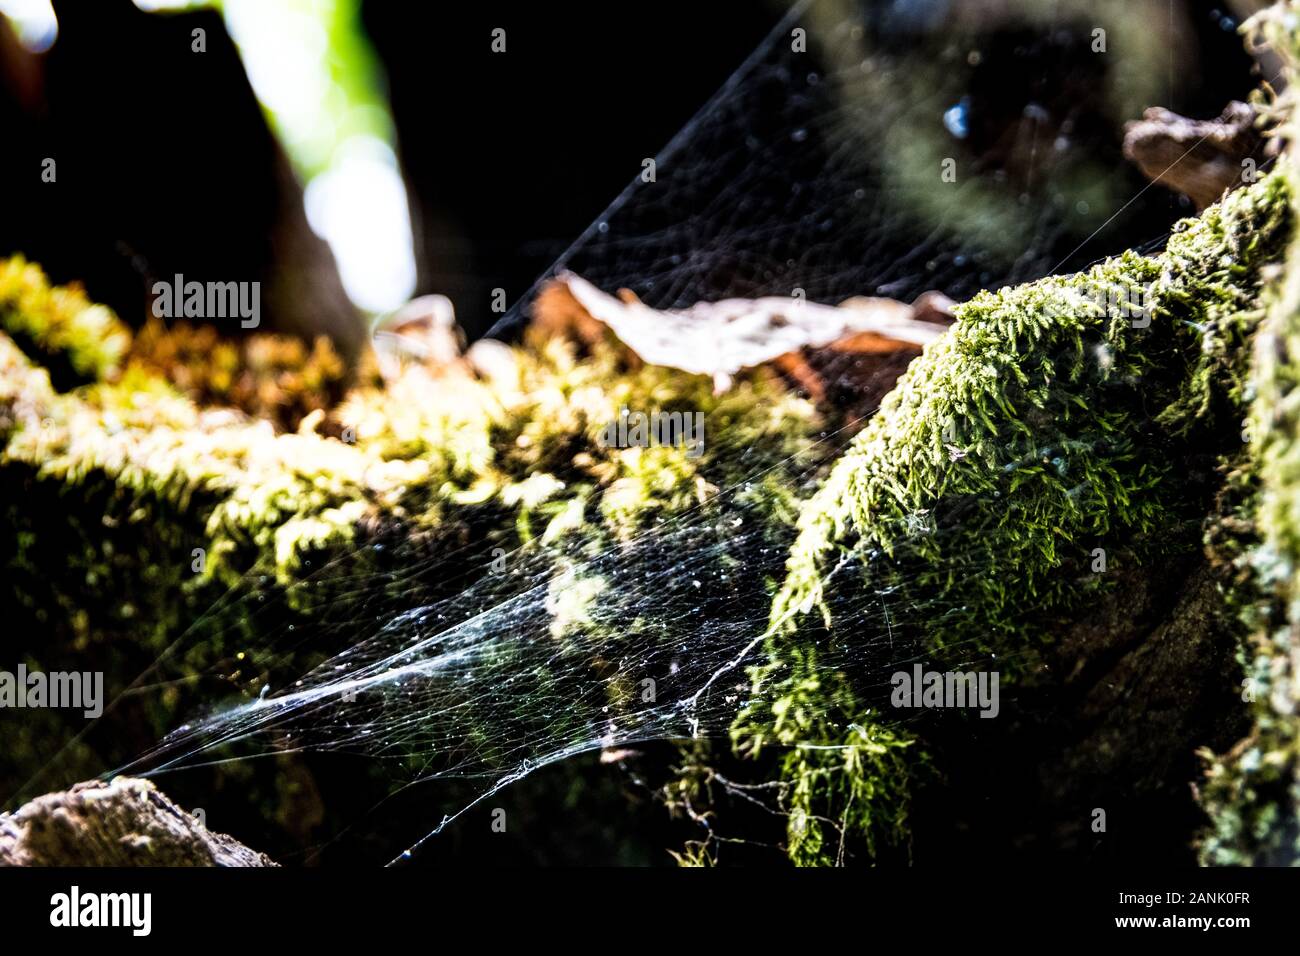 Vista de un tejido de araña entre el musgo Foto de stock